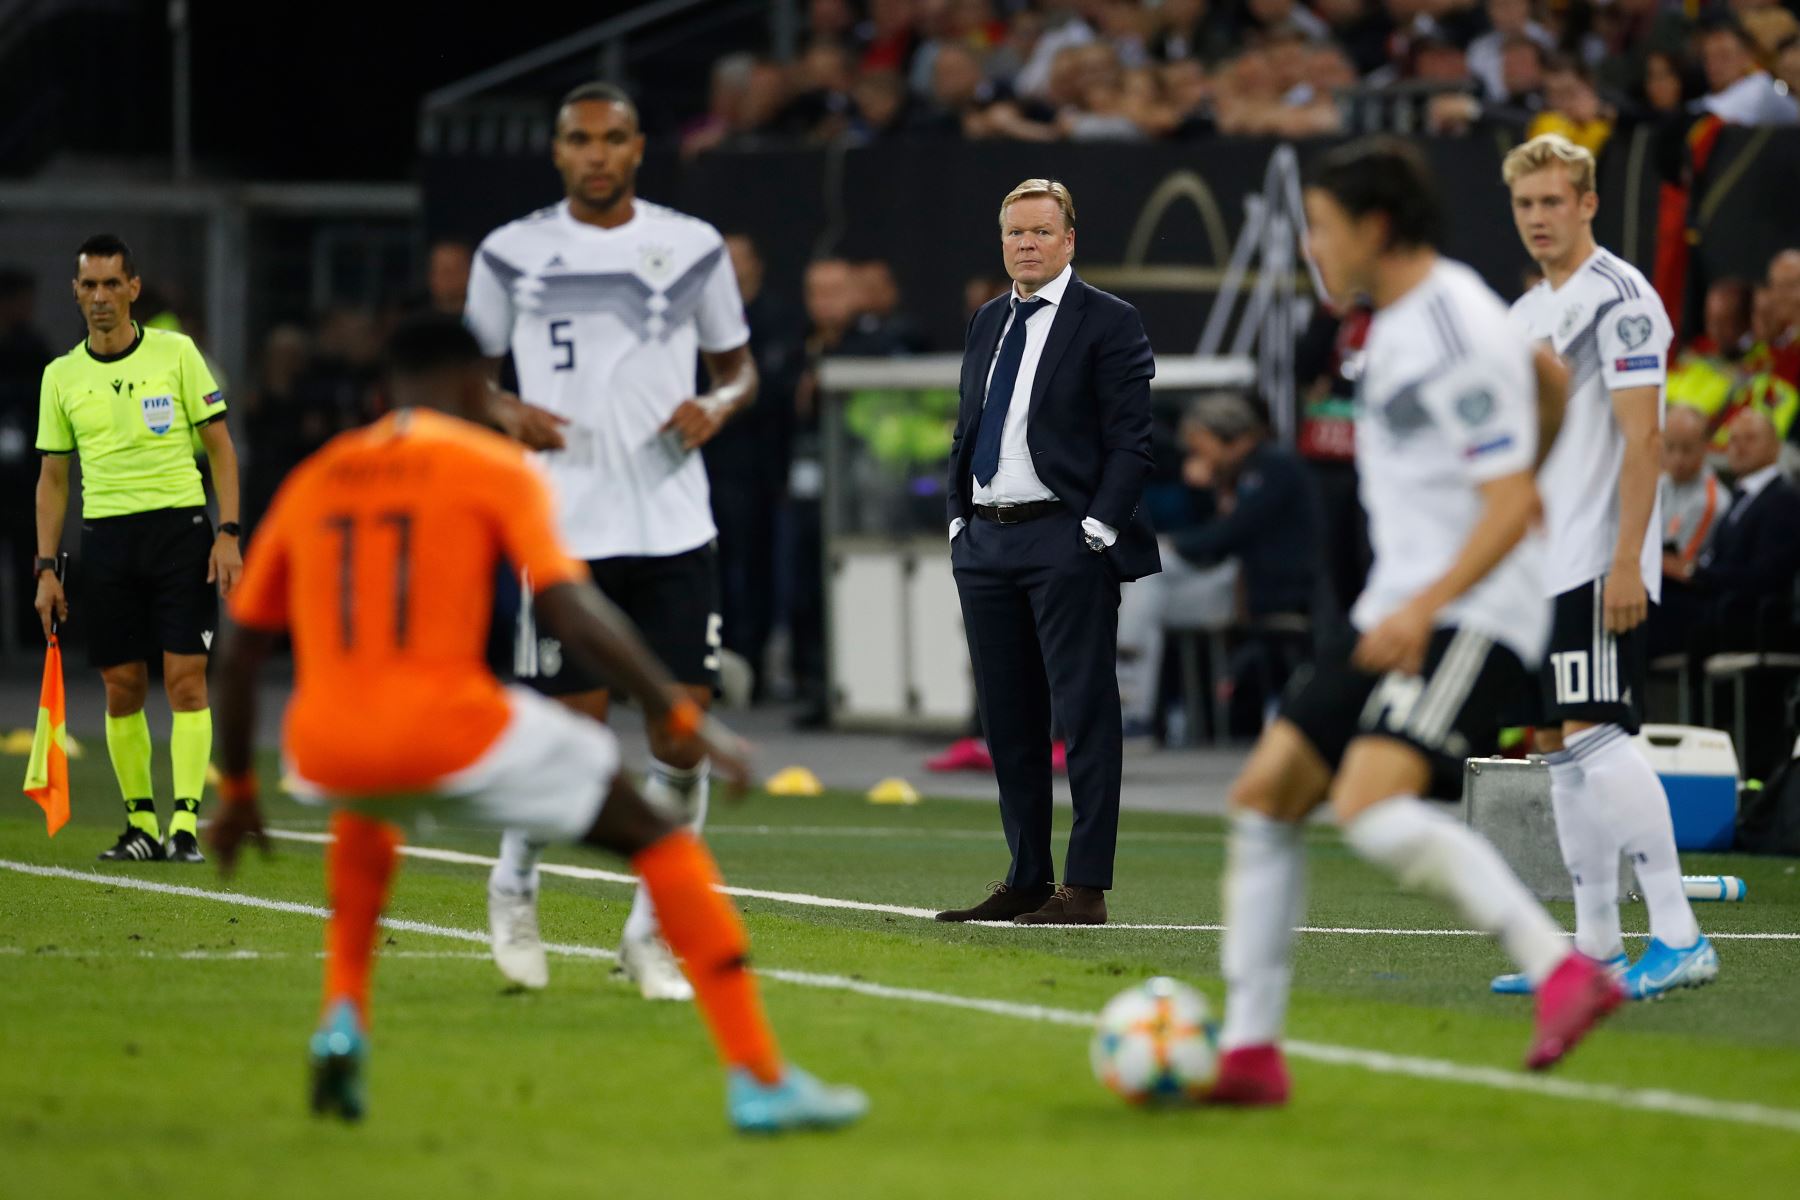 El entrenador de Holanda, Ronald Koeman, sigue la acción de su equipo desde el banquillo durante el partido de fútbol entre Holanda y Alemania por el Grupo C de la UEFA Euro 2020. Foto: AFP